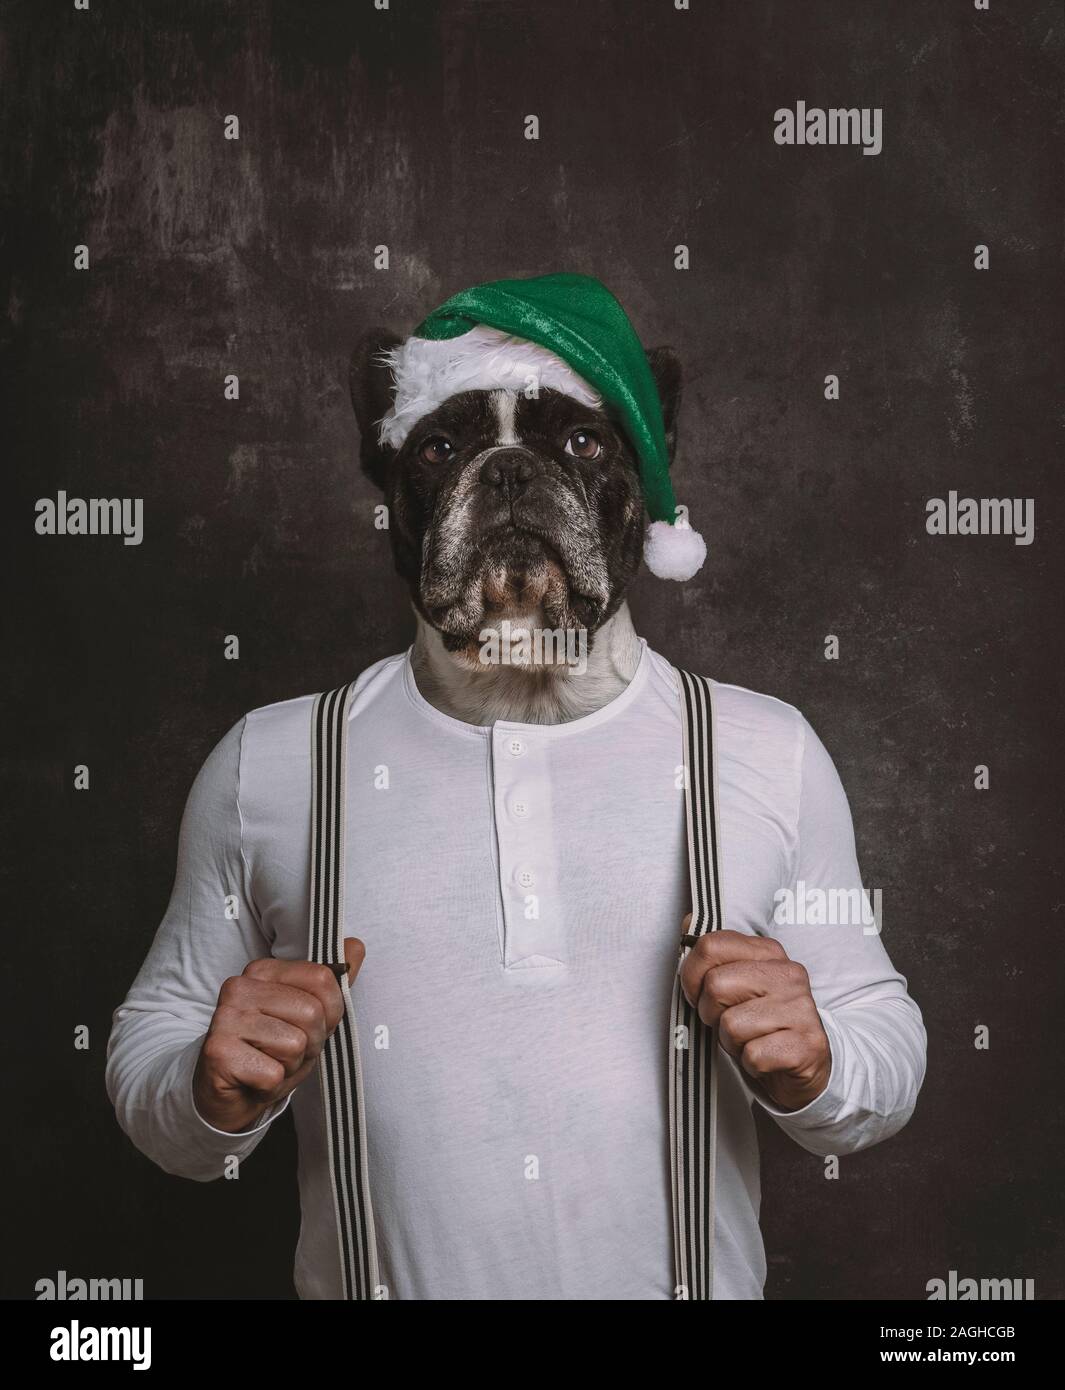 Bouledogue français chien tête portrait avec green Christmas hat sur le corps d'un homme avec des accolades. Noël surréalisme concept. Banque D'Images